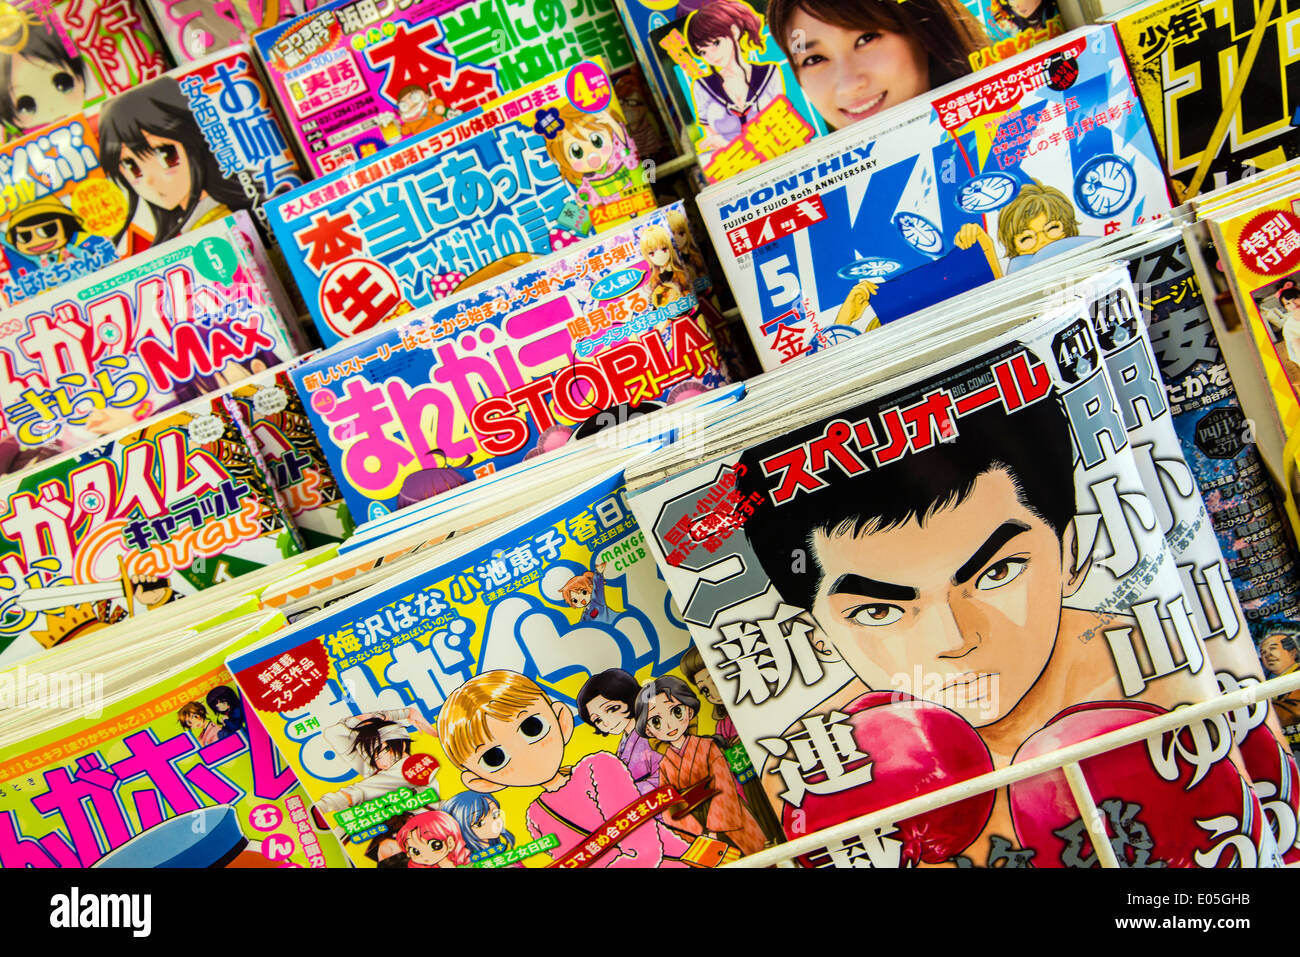 Pile di fumetti manga riviste e pubblicazioni al giornalaio, Kyoto, Giappone Foto Stock